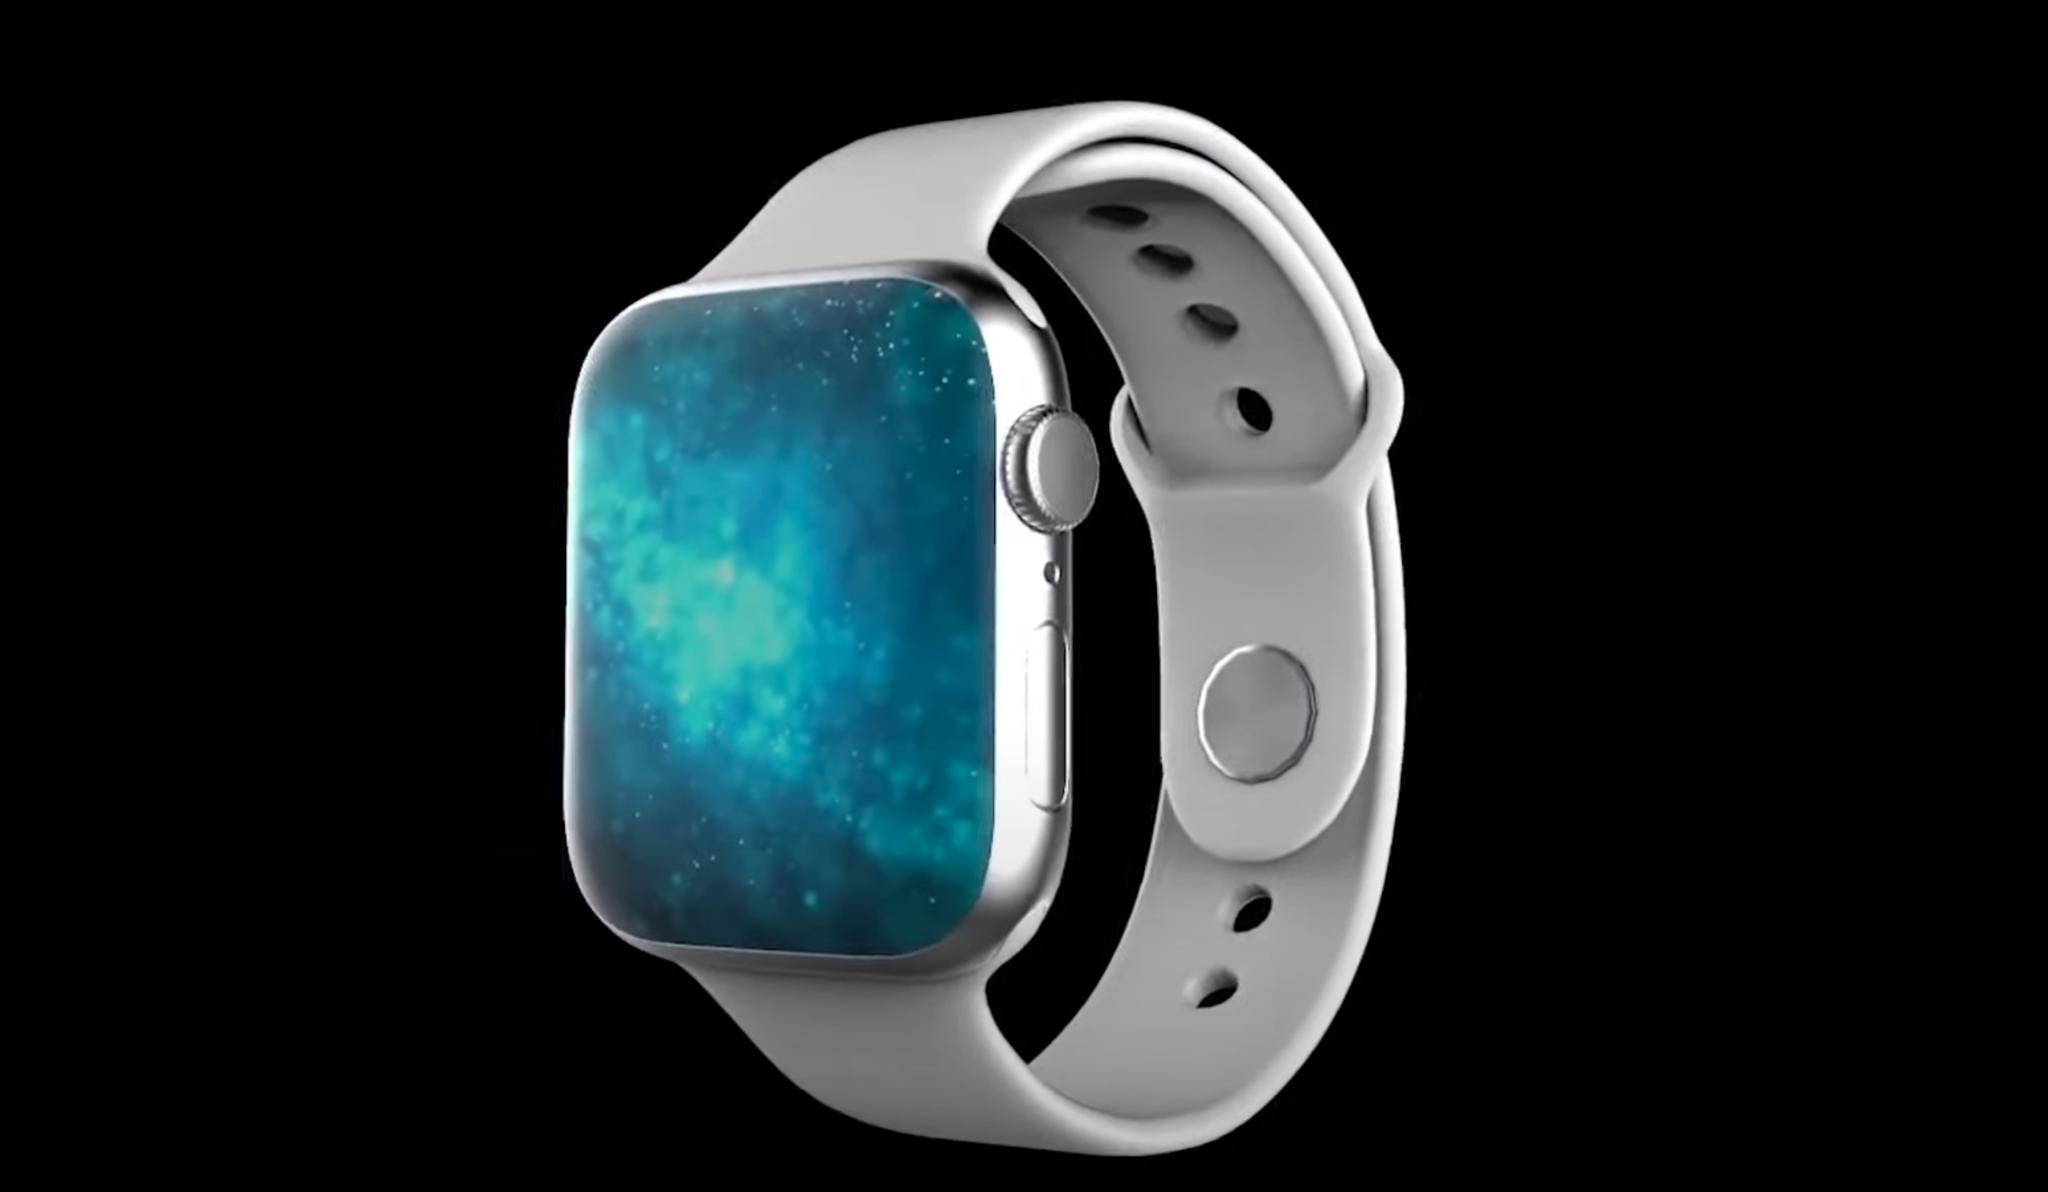 Apple Watch Series 6 Concept Art